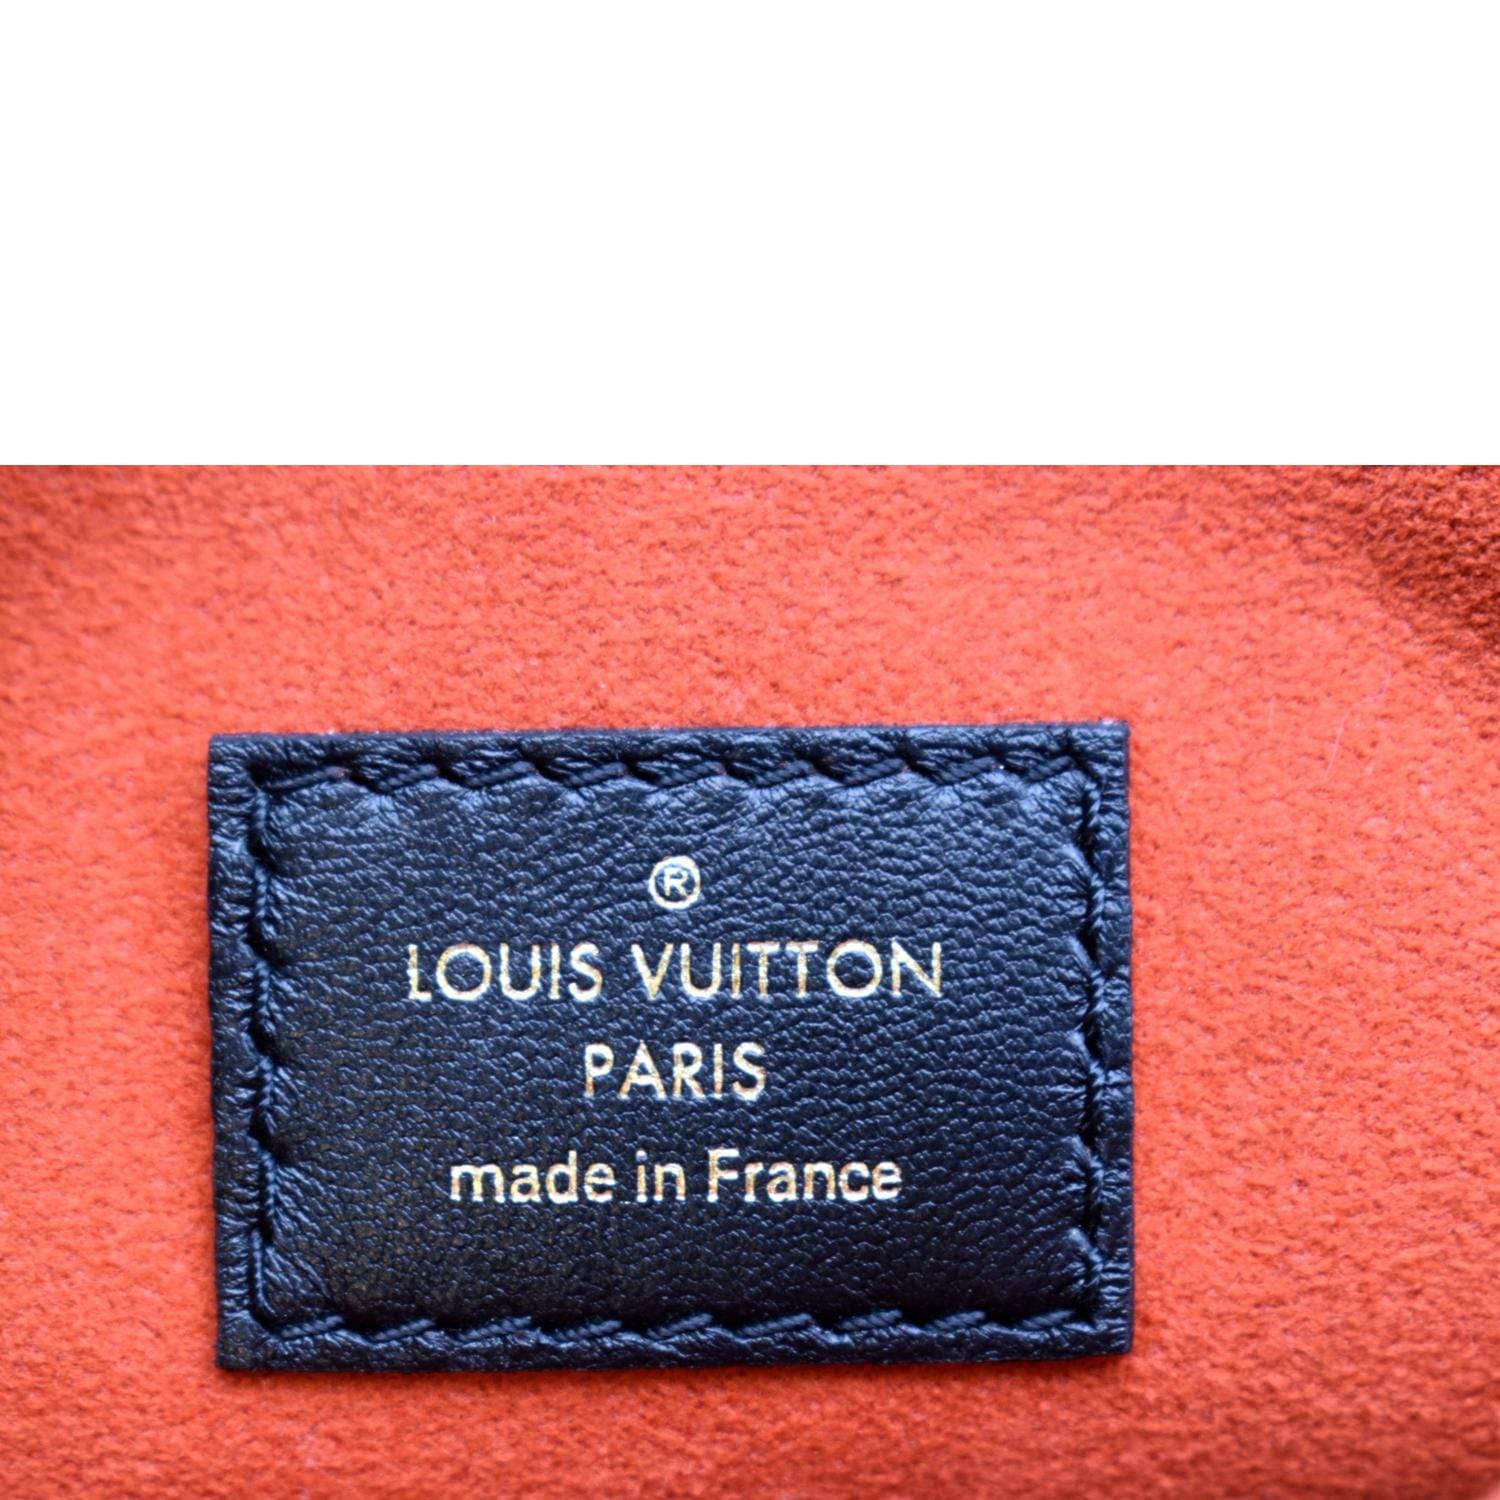 Shop Louis Vuitton Unisex Blended Fabrics Decorative Pillows (M78816,  M78815, M77525) by babybbb